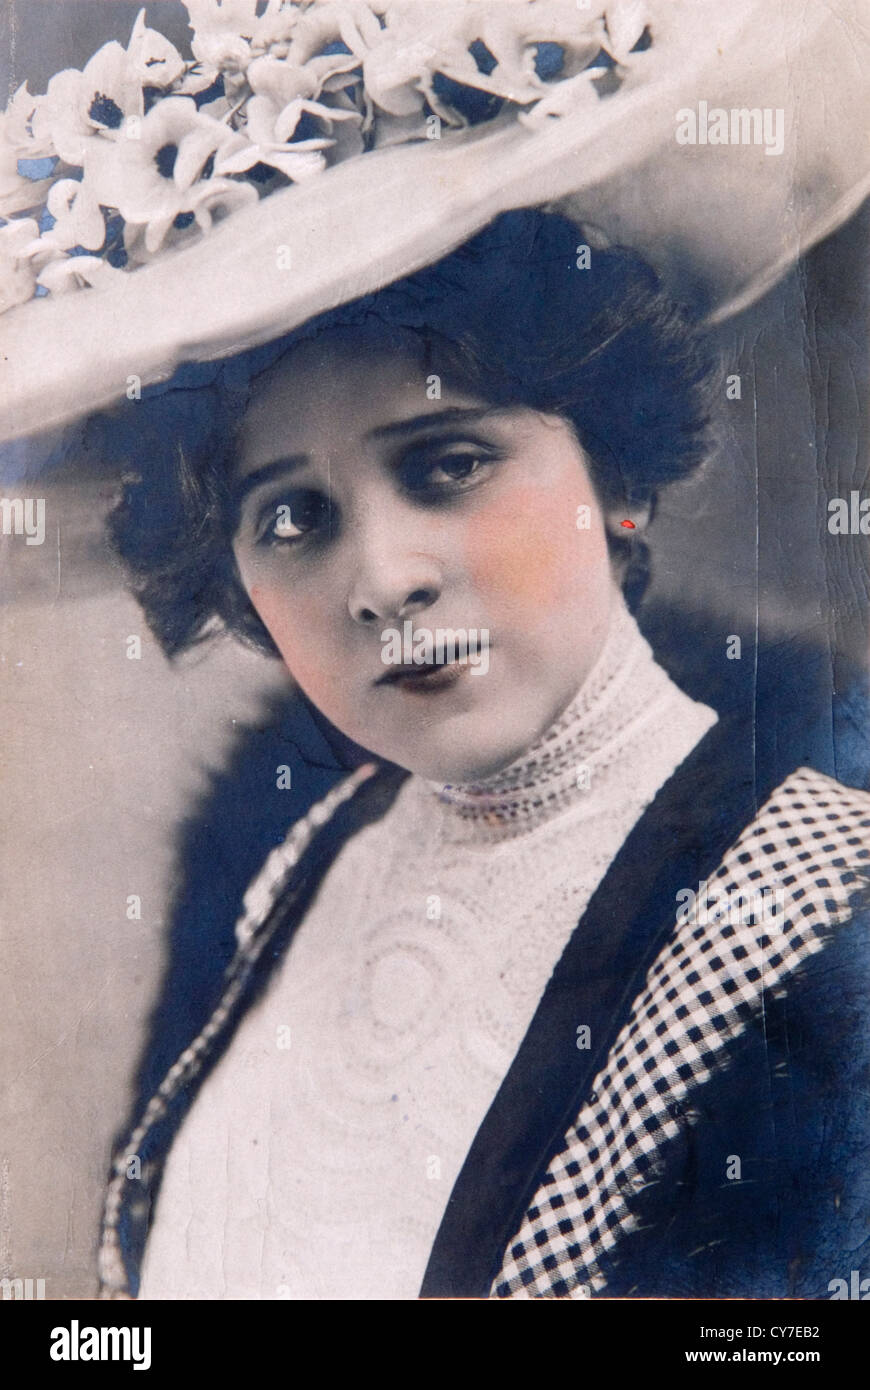 Pettie Edna May (2 septembre 1878 - 1 janvier 1948), connu sur scène comme Edna May, était une actrice et chanteuse américaine. Banque D'Images